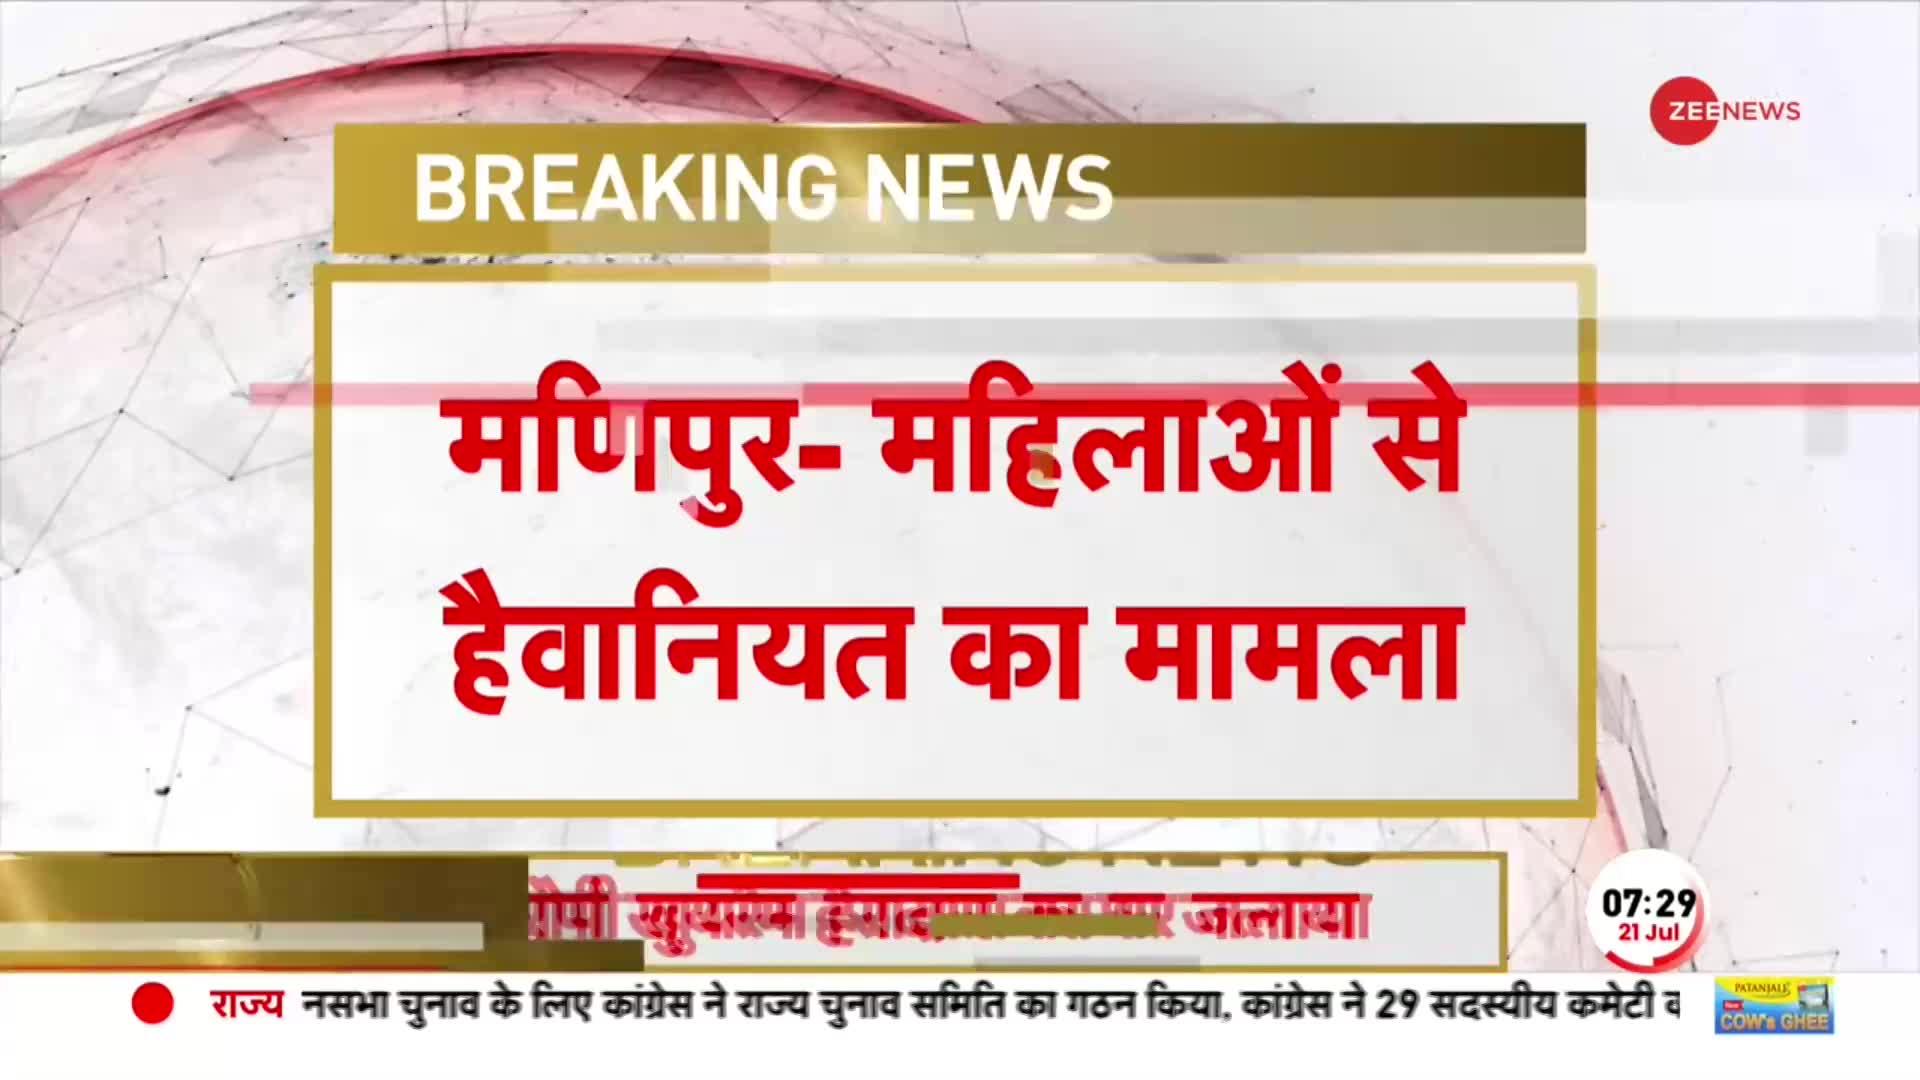 Manipur Breaking: मणिपुर वीडियो केस में बड़ी खबर, मुख्य आरोपी खुयरेस हेरादास का घर जलाया